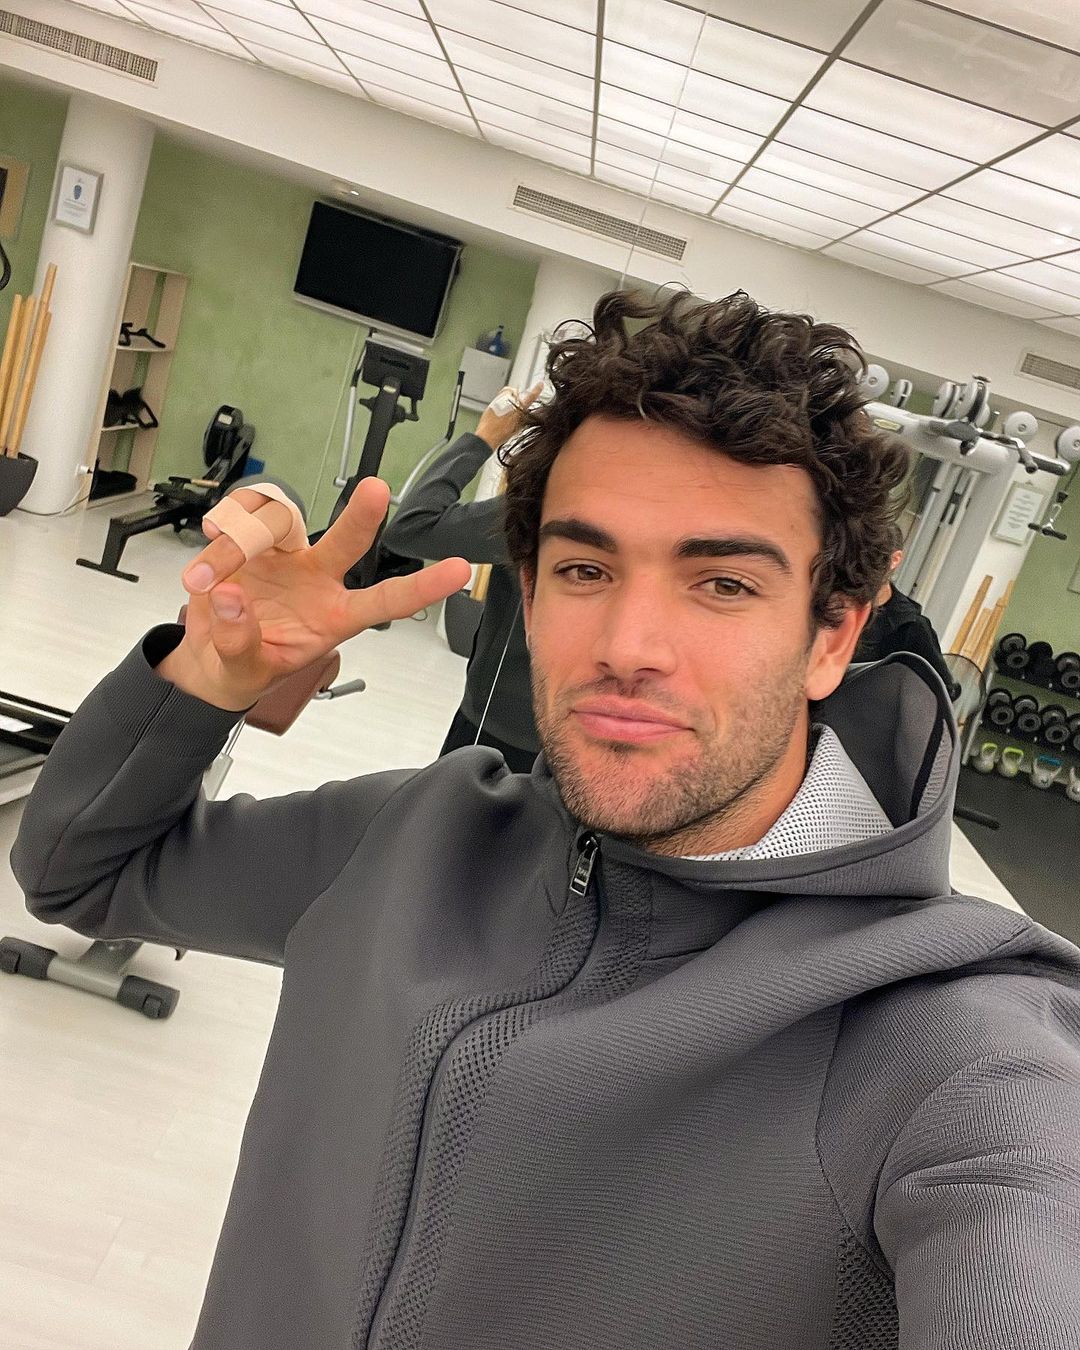 El de deportista Matteo Berrettini en un selfie en un gimnasio con el pelo rizado